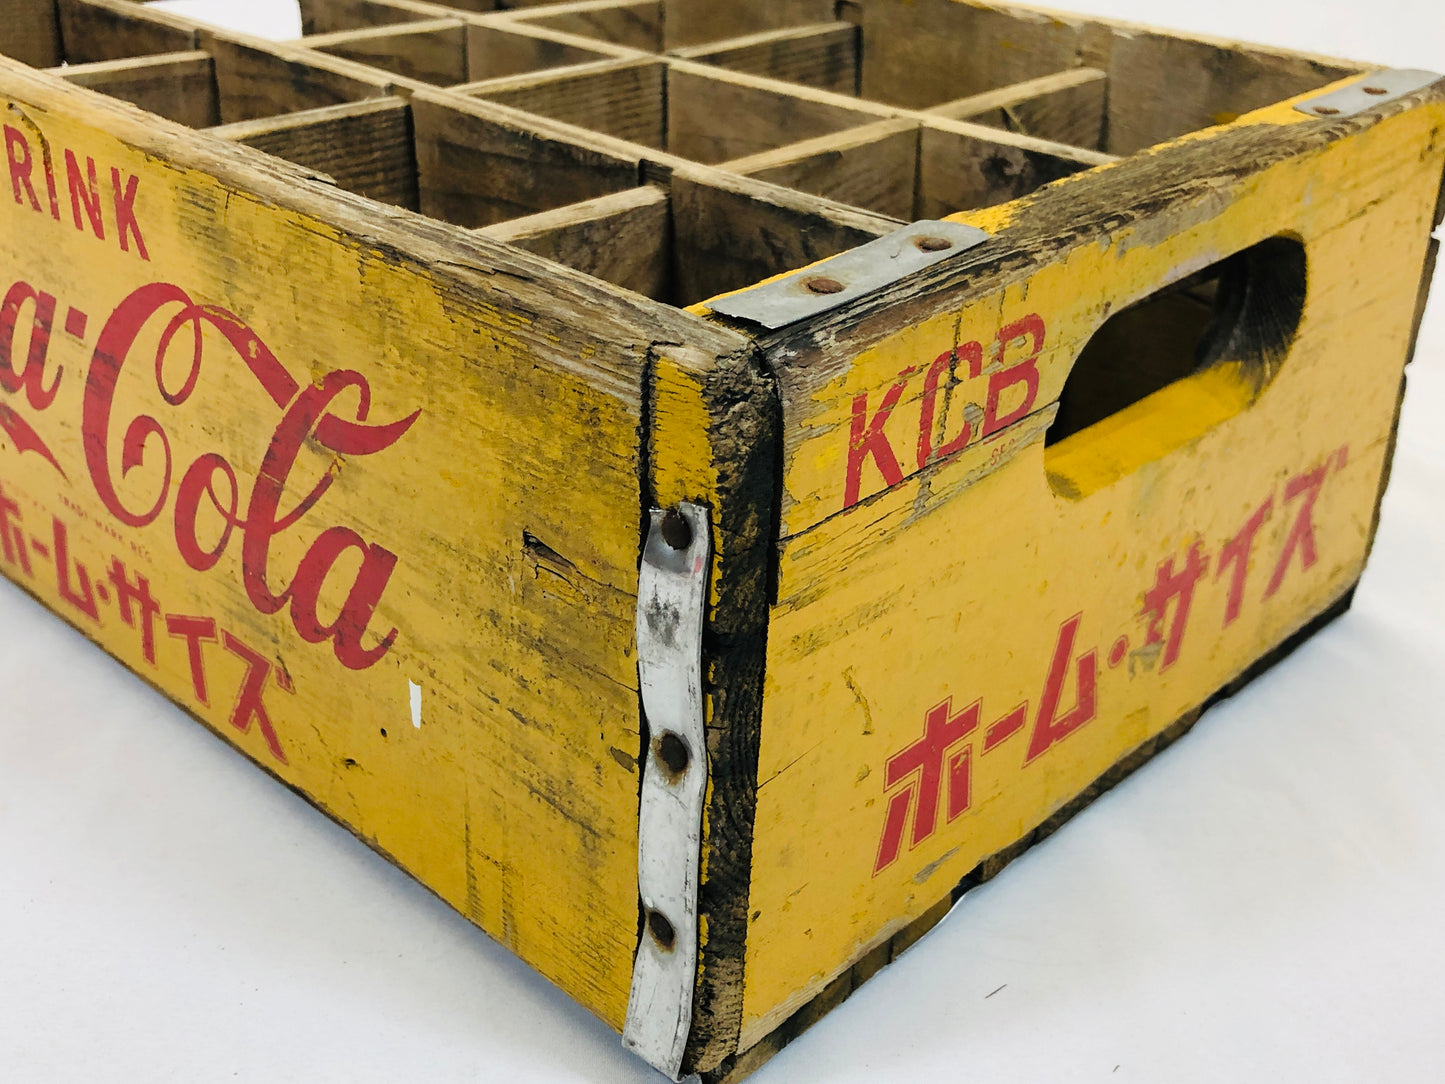 Y5224 BOX wood Coca-Cola storage container Japan antique vintage interior